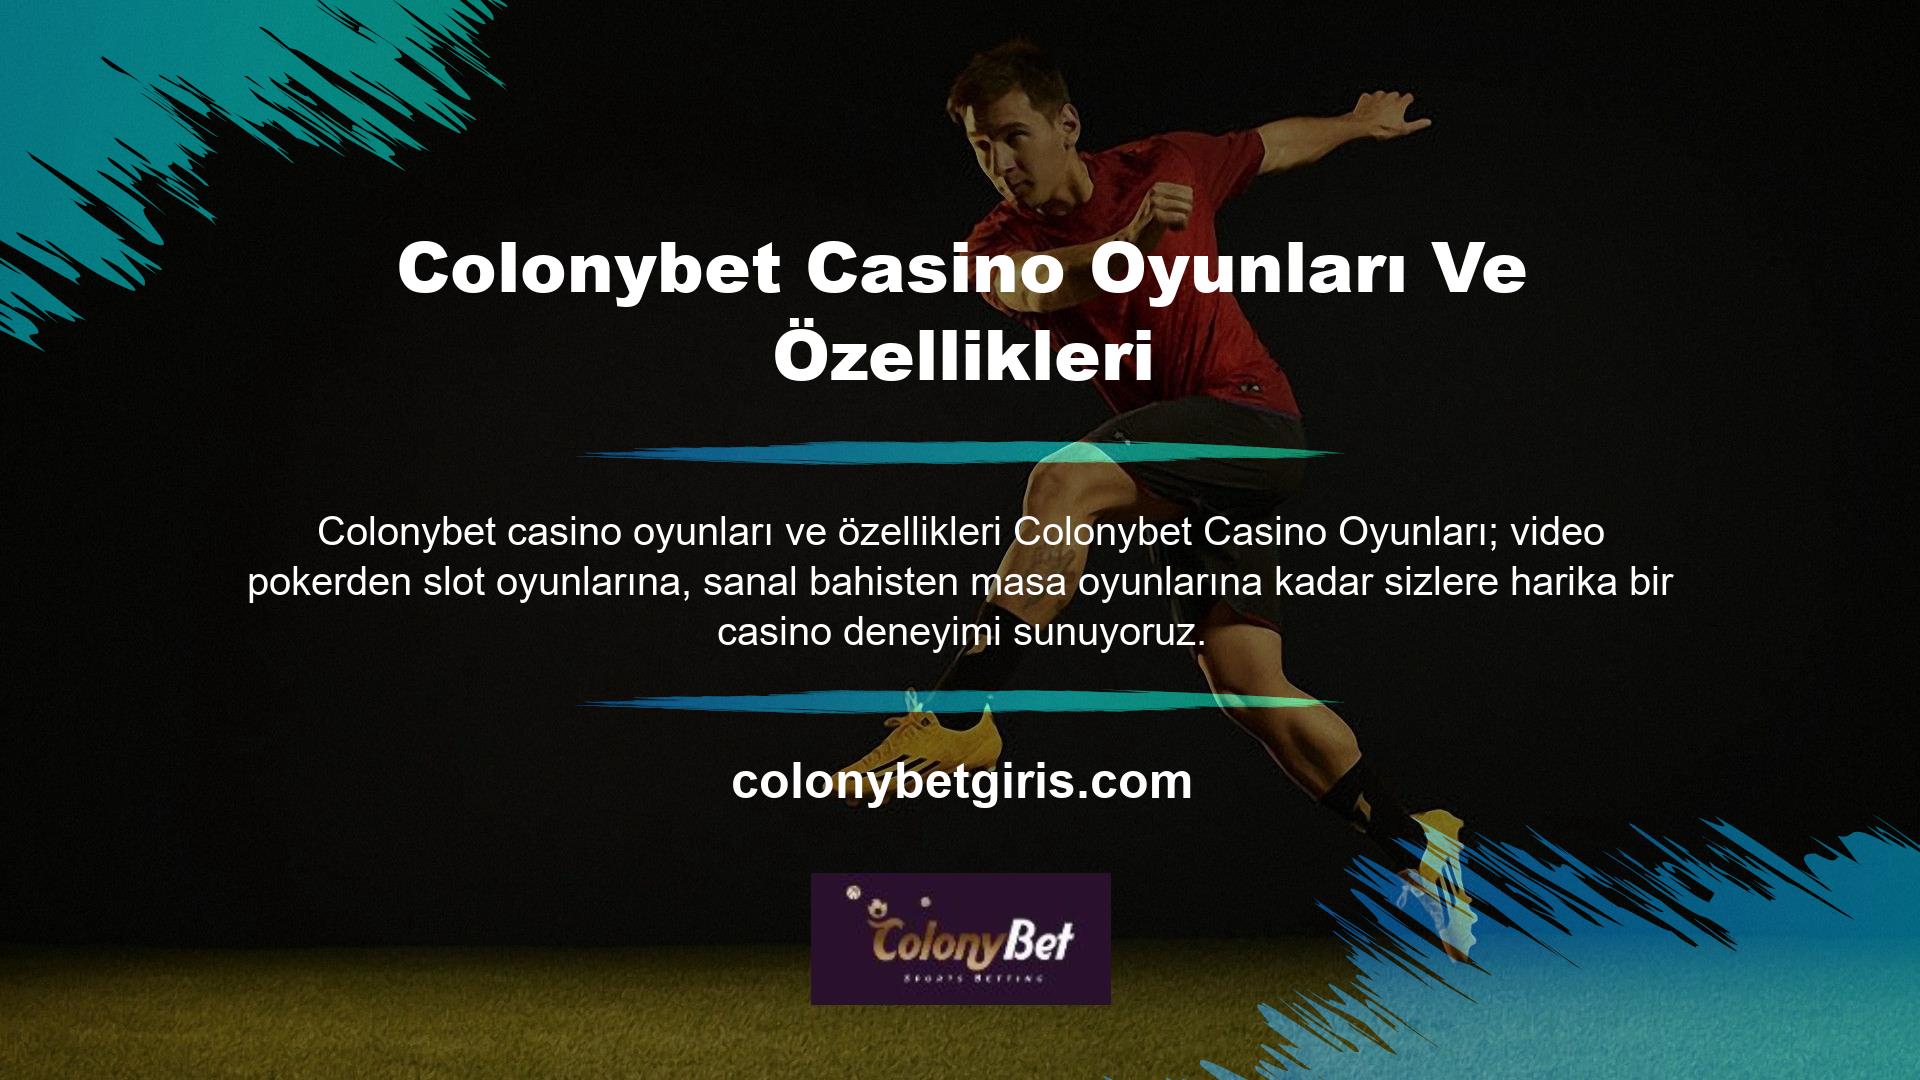 Colonybet Casino, çoğu çevrimiçi casino sitesinde bulacağınızdan daha fazlasını sunar